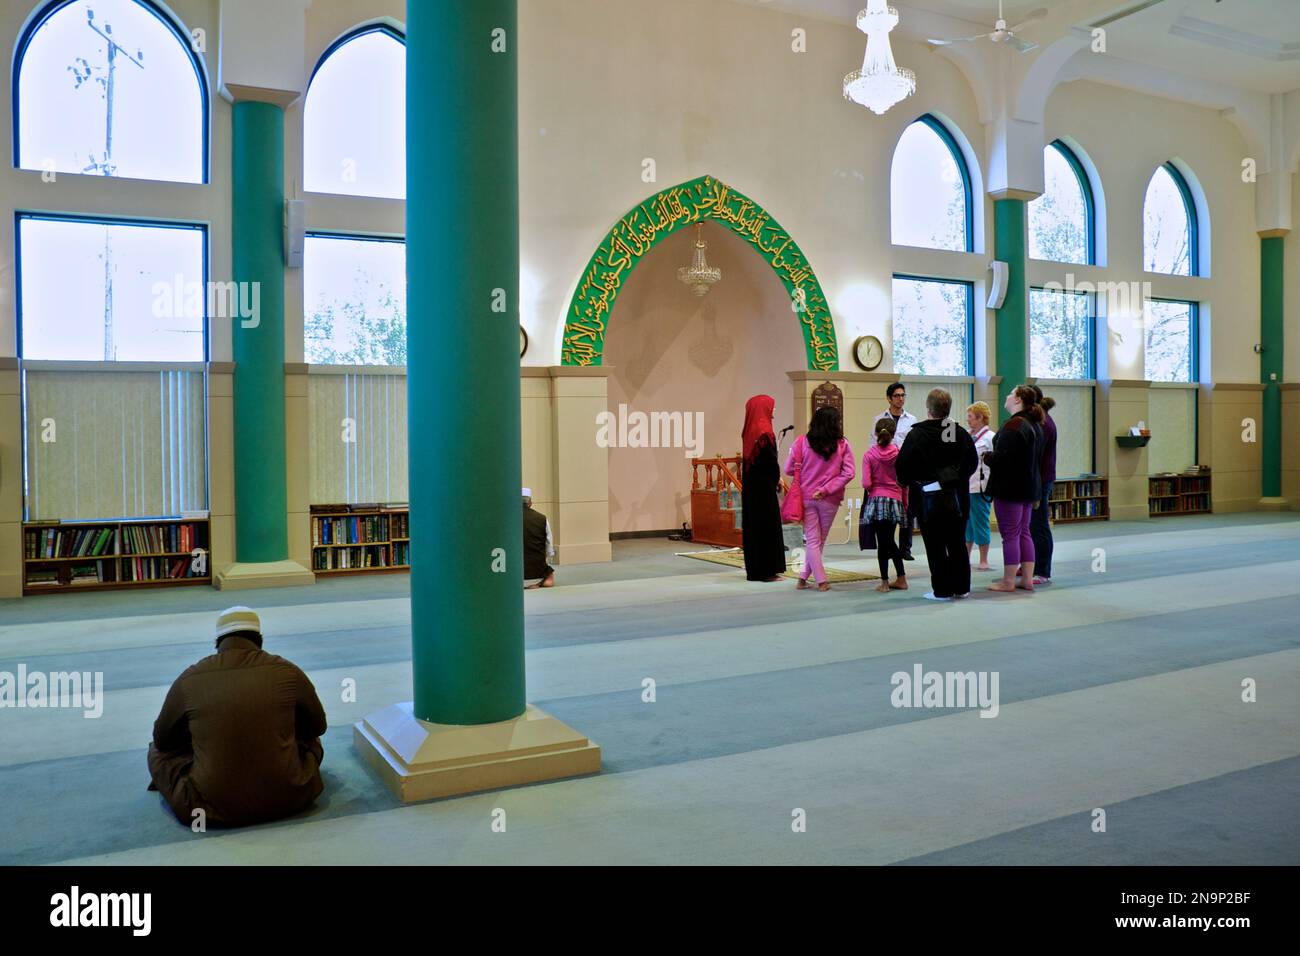 Toronto, Ontario / Canada - 26 maggio 2013: Edificio interno di una moschea. Uomo arabo musulmano che legge il Corano e prega. Foto Stock